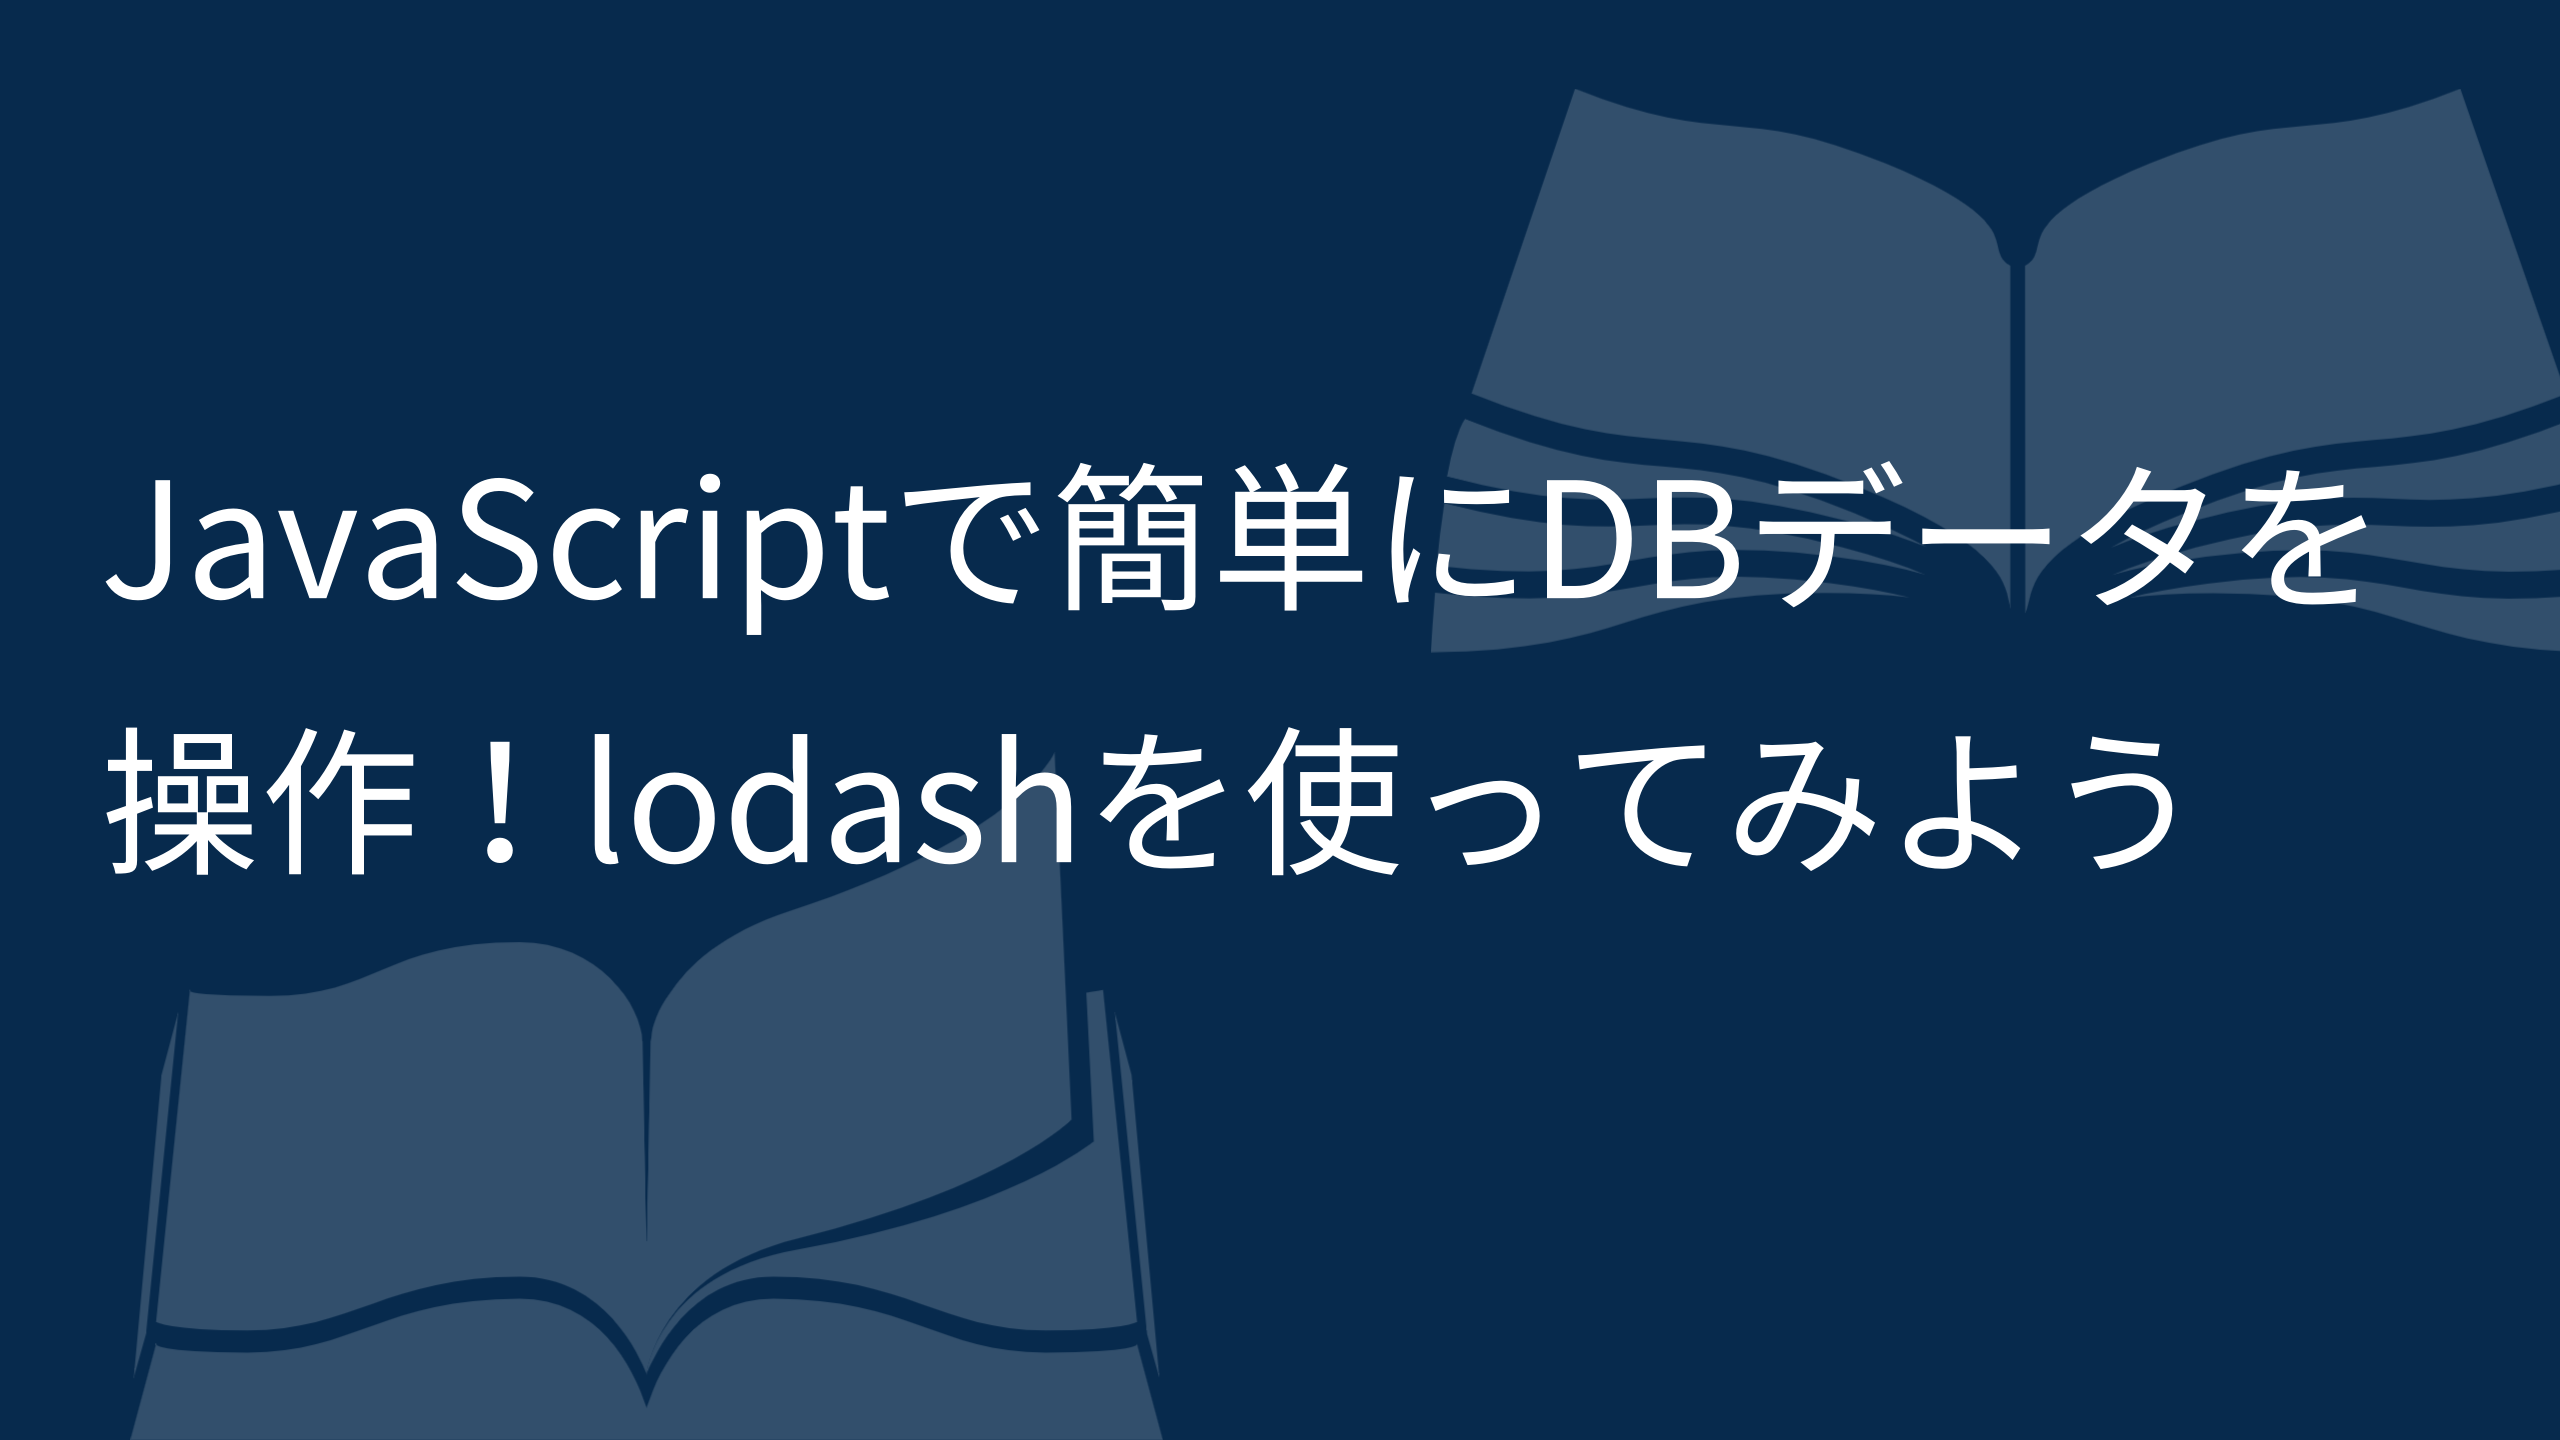 JavaScriptで簡単にDBデータを操作！lodashを使ってみよう